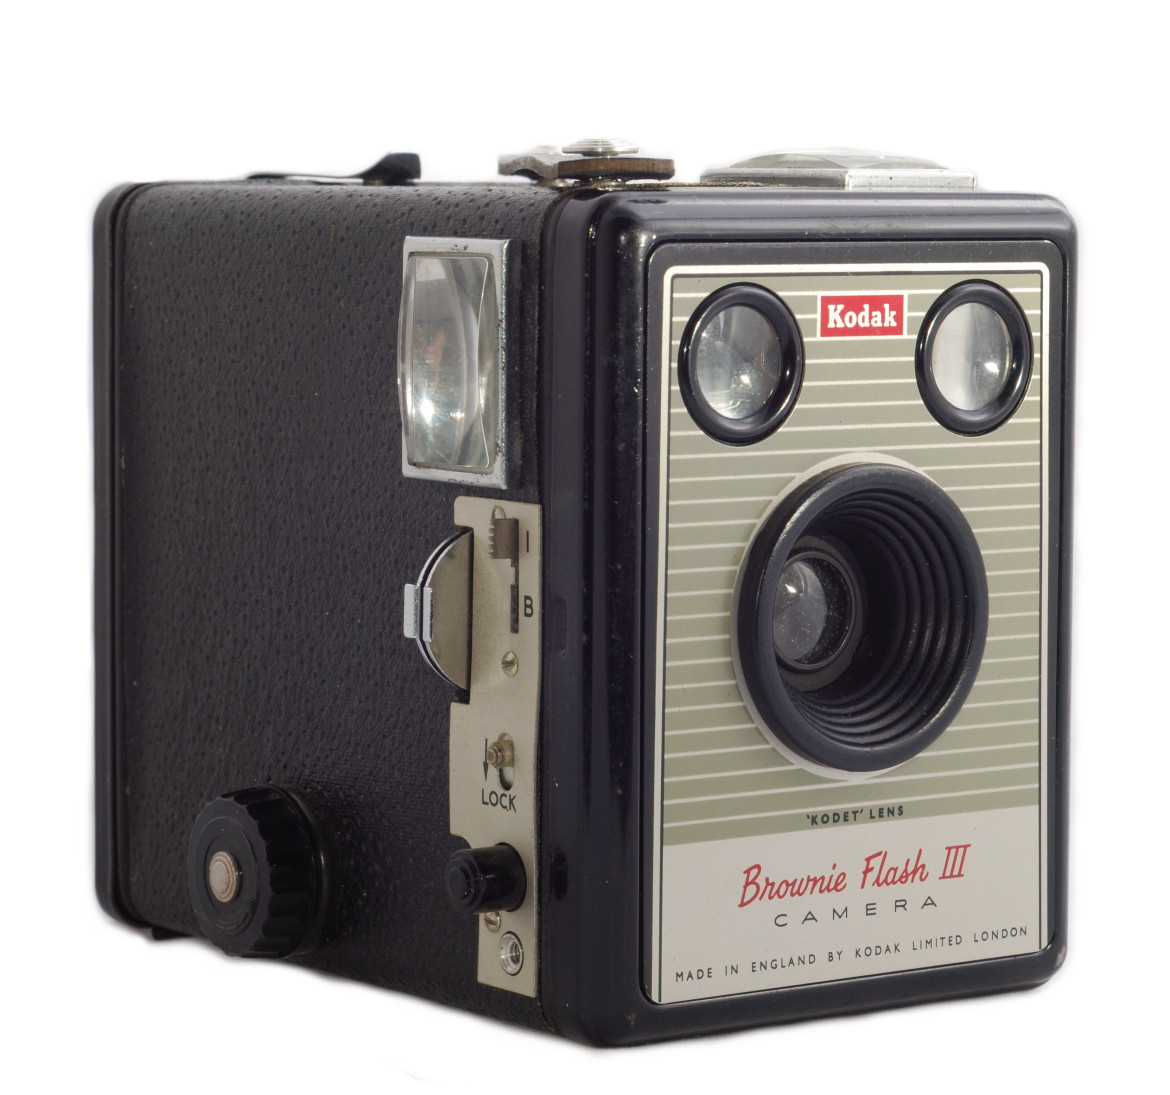 Kodak Brownie był produkowany w wielu wersjach w latach 1900-1957. Flash III jak widać nie ma już kartonowej obudowy, tylko wykonaną z tworzywa